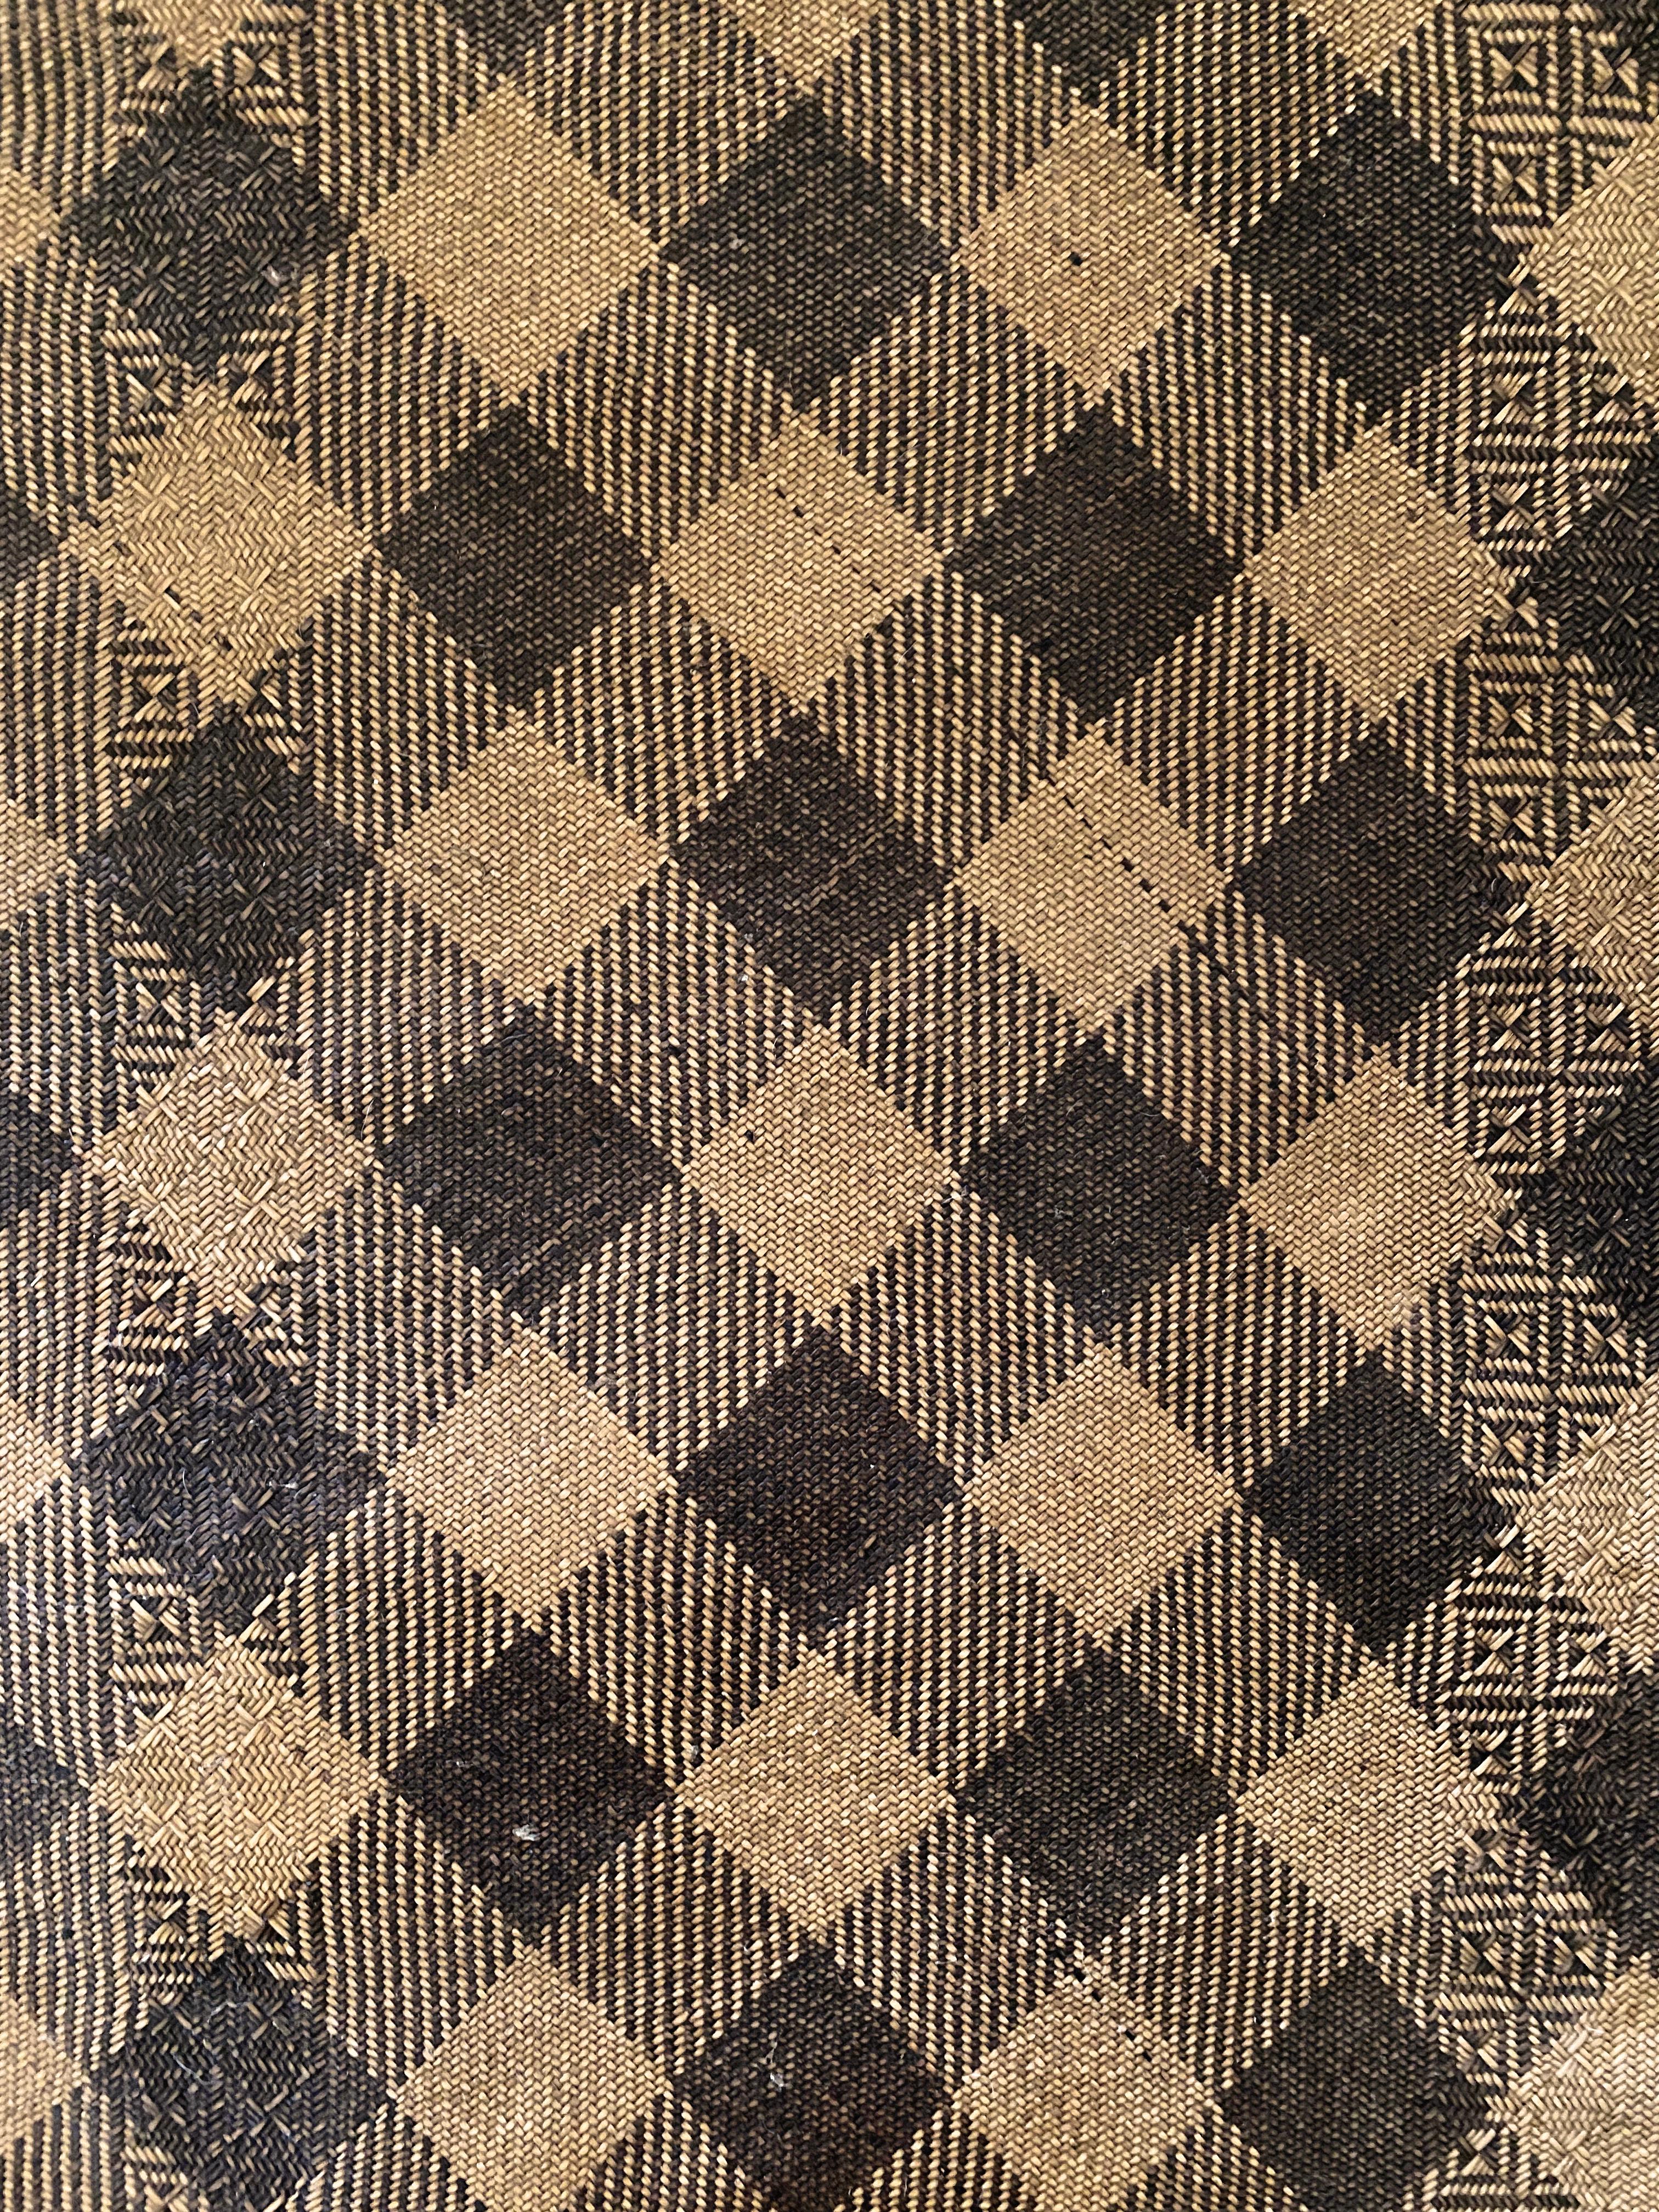 Ce tapis de sol occupait autrefois une longue maison tribale de la tribu Dayak de Bornéo. Il est fabriqué à partir de fibres de rotin tissées, teintes et de couleur naturelle, formant des motifs tribaux. Une bordure en cuir a été ajoutée au tapis.